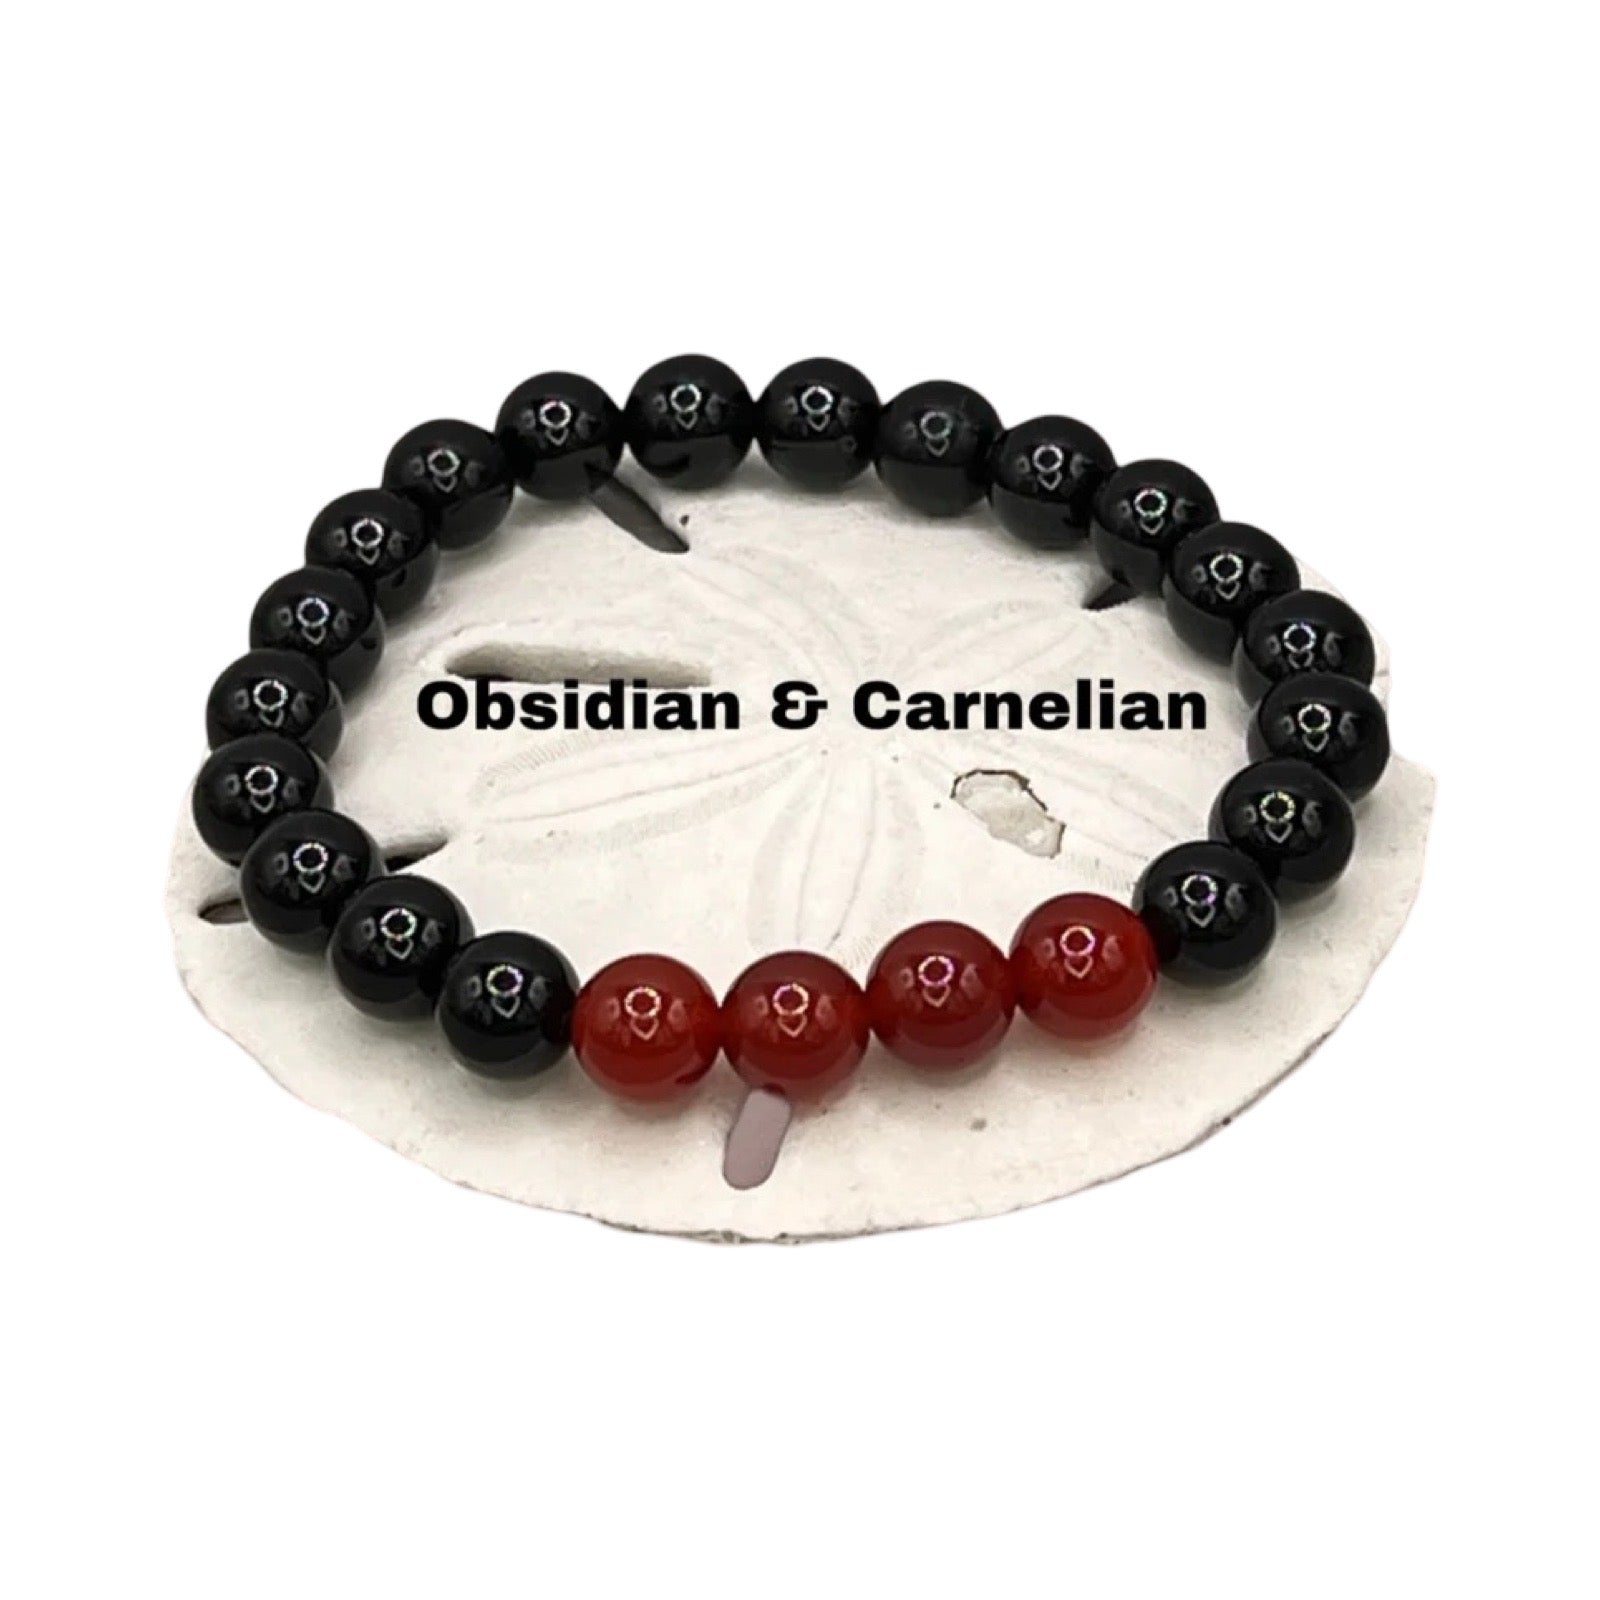 obsidian and carnelian bracelet